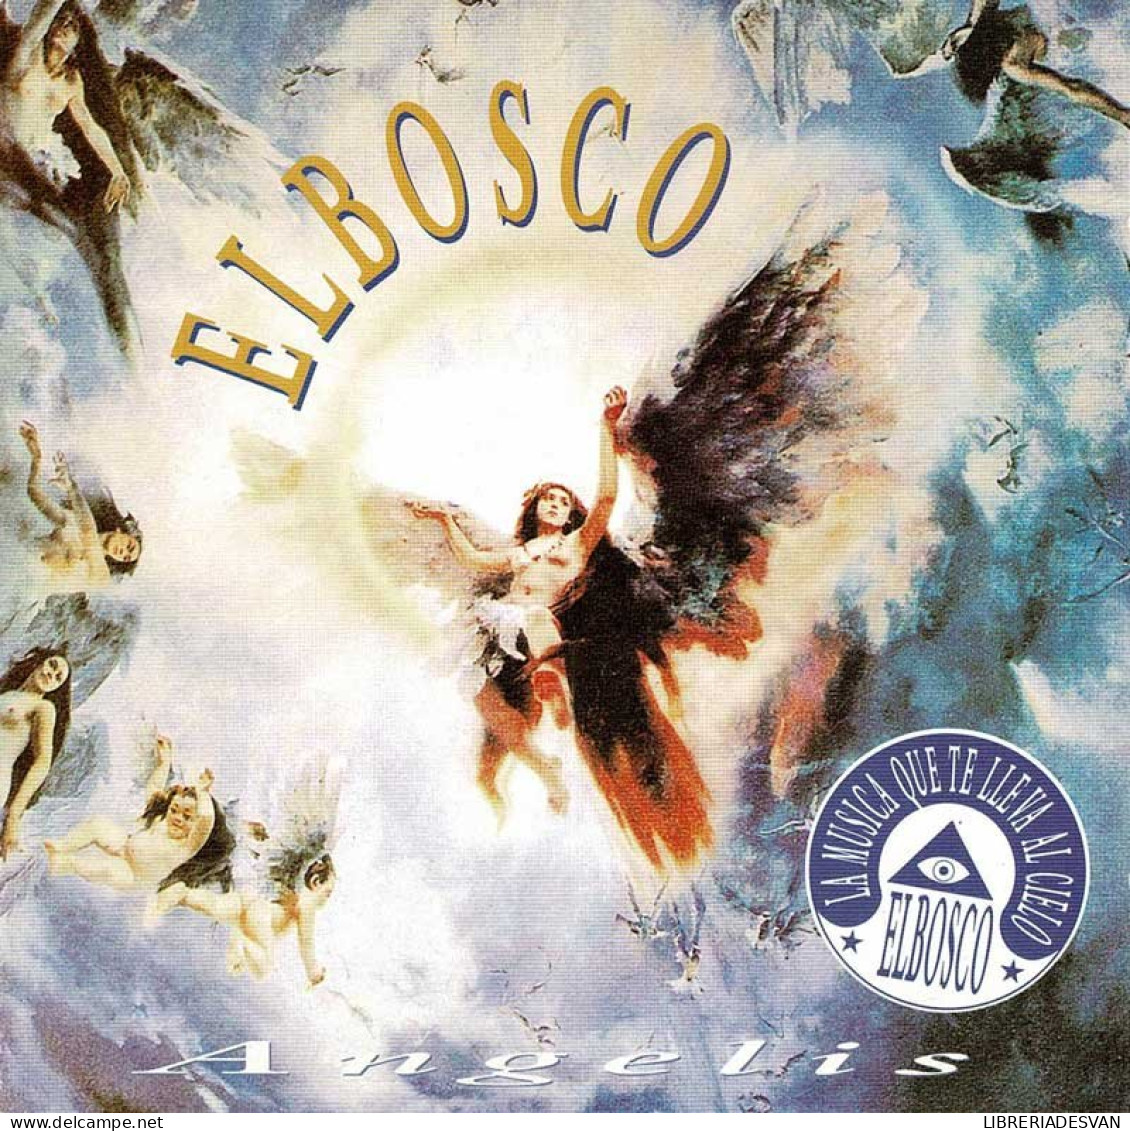 Elbosco - Angelis. CD - New Age